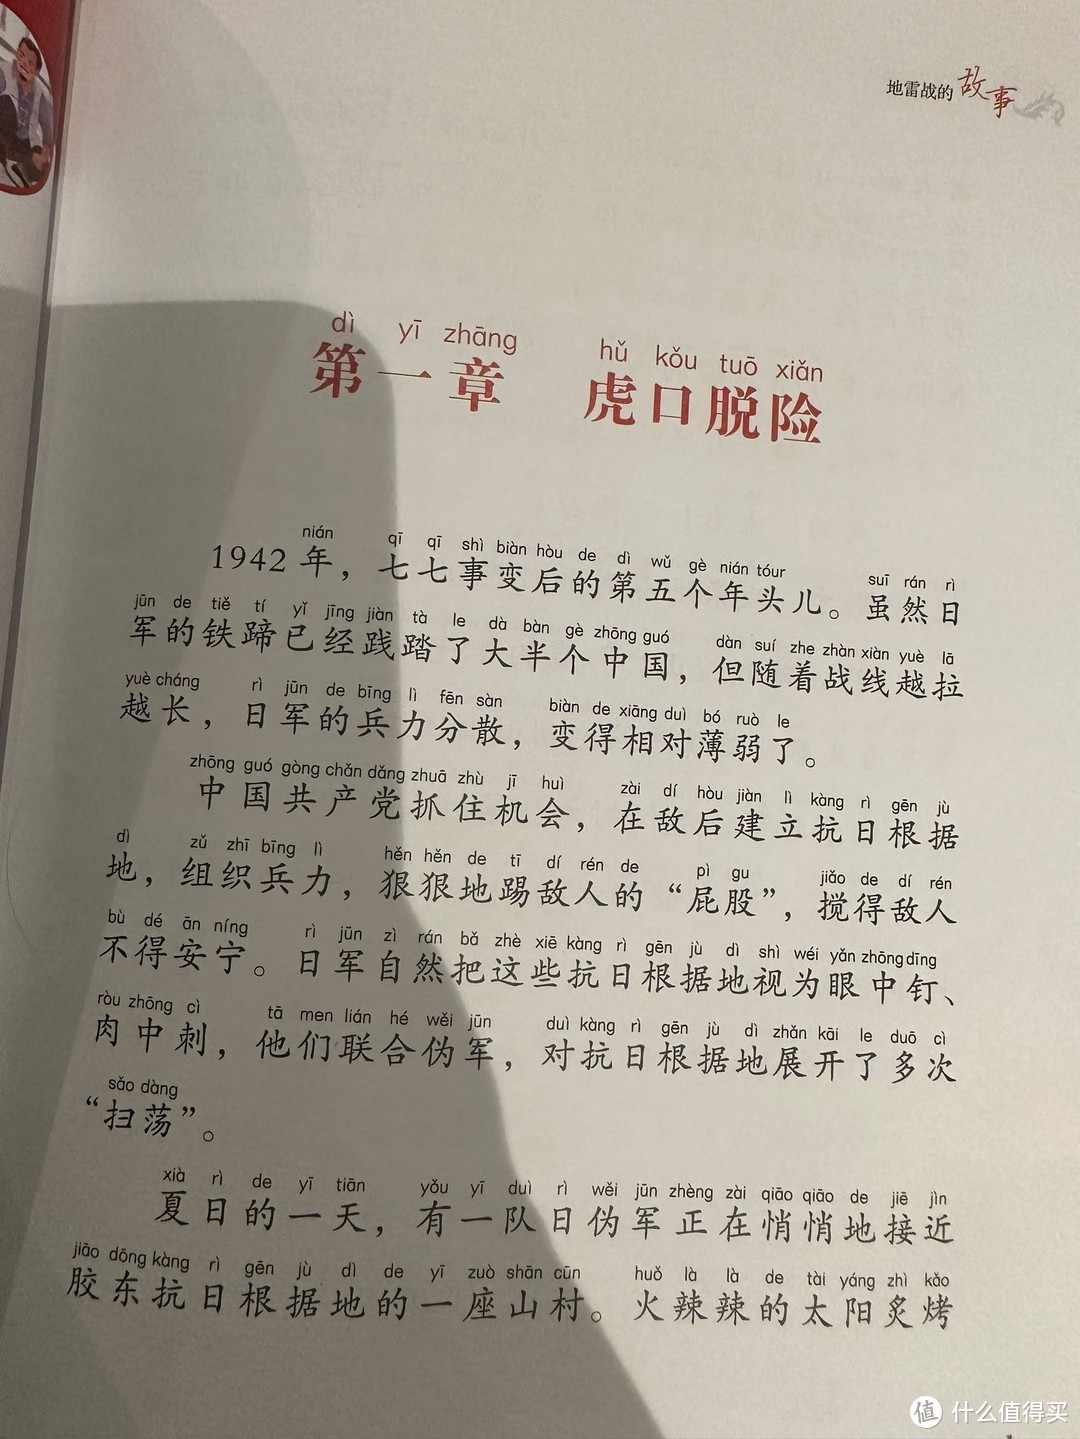 中国儿童共享的经典丛书地雷战的故事。